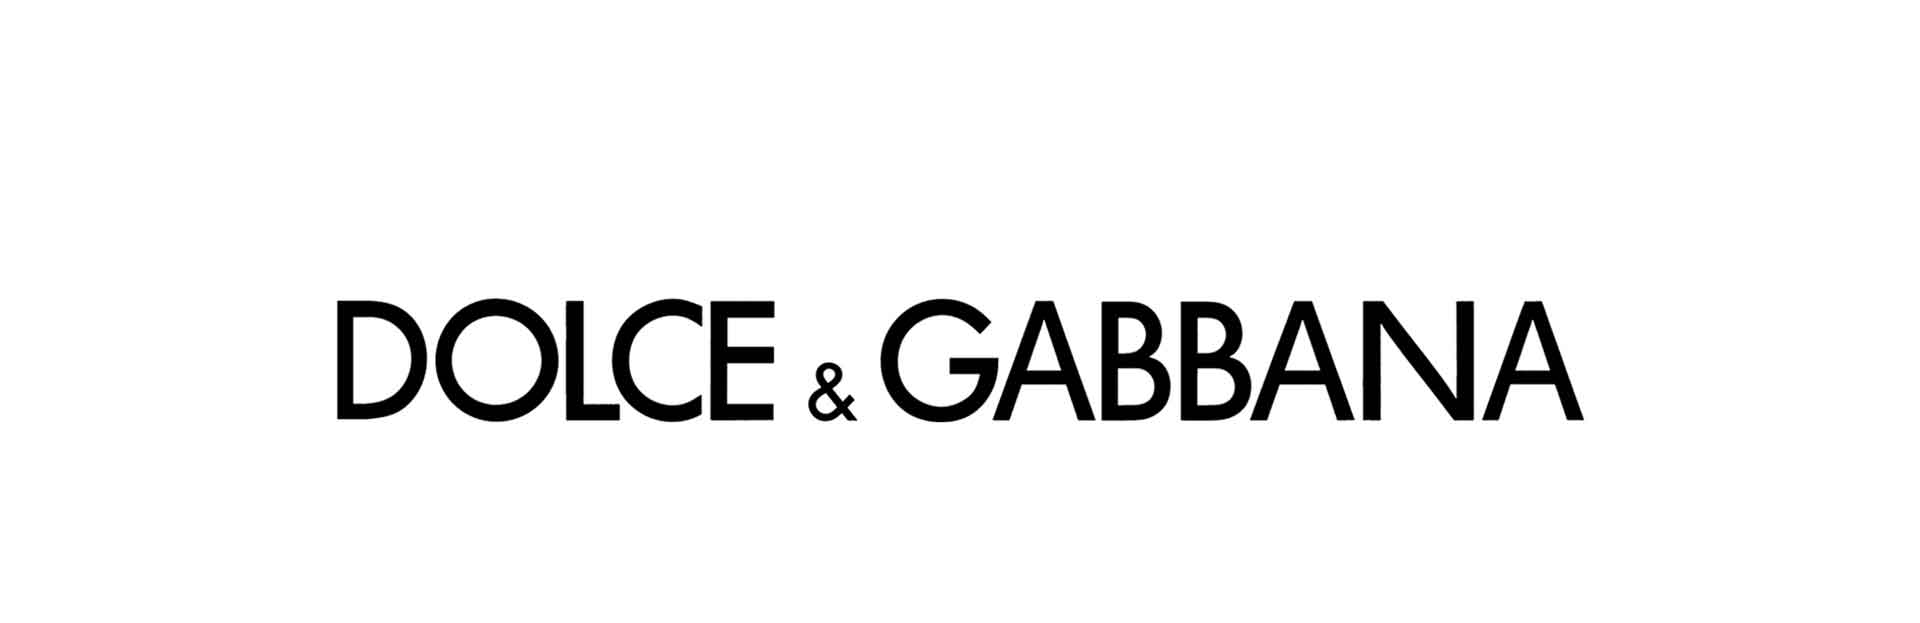 dolce and gabbana brand